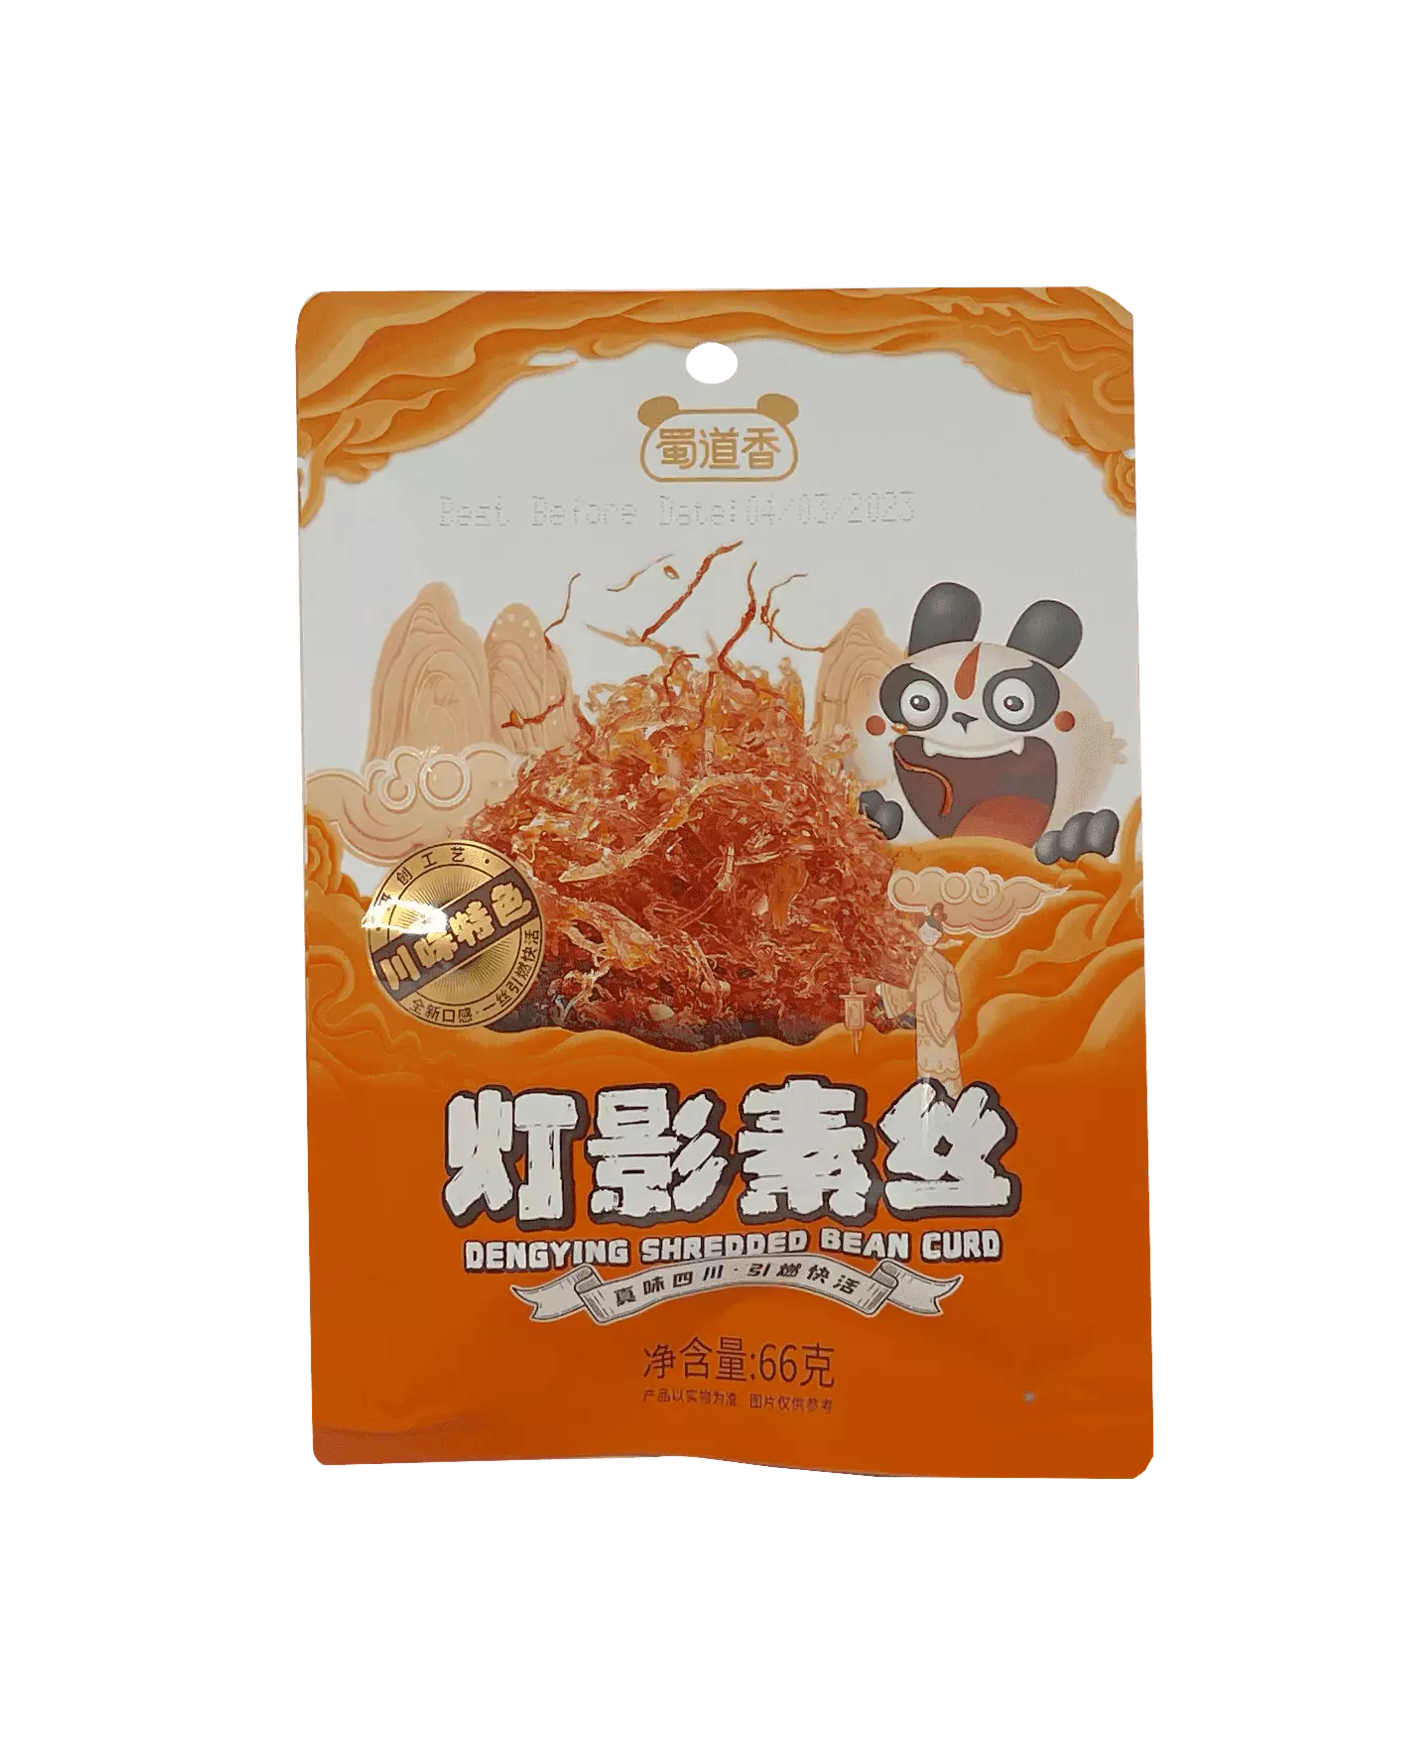 Snacks Den Ying Shredded Bean Curd 66g SDX China